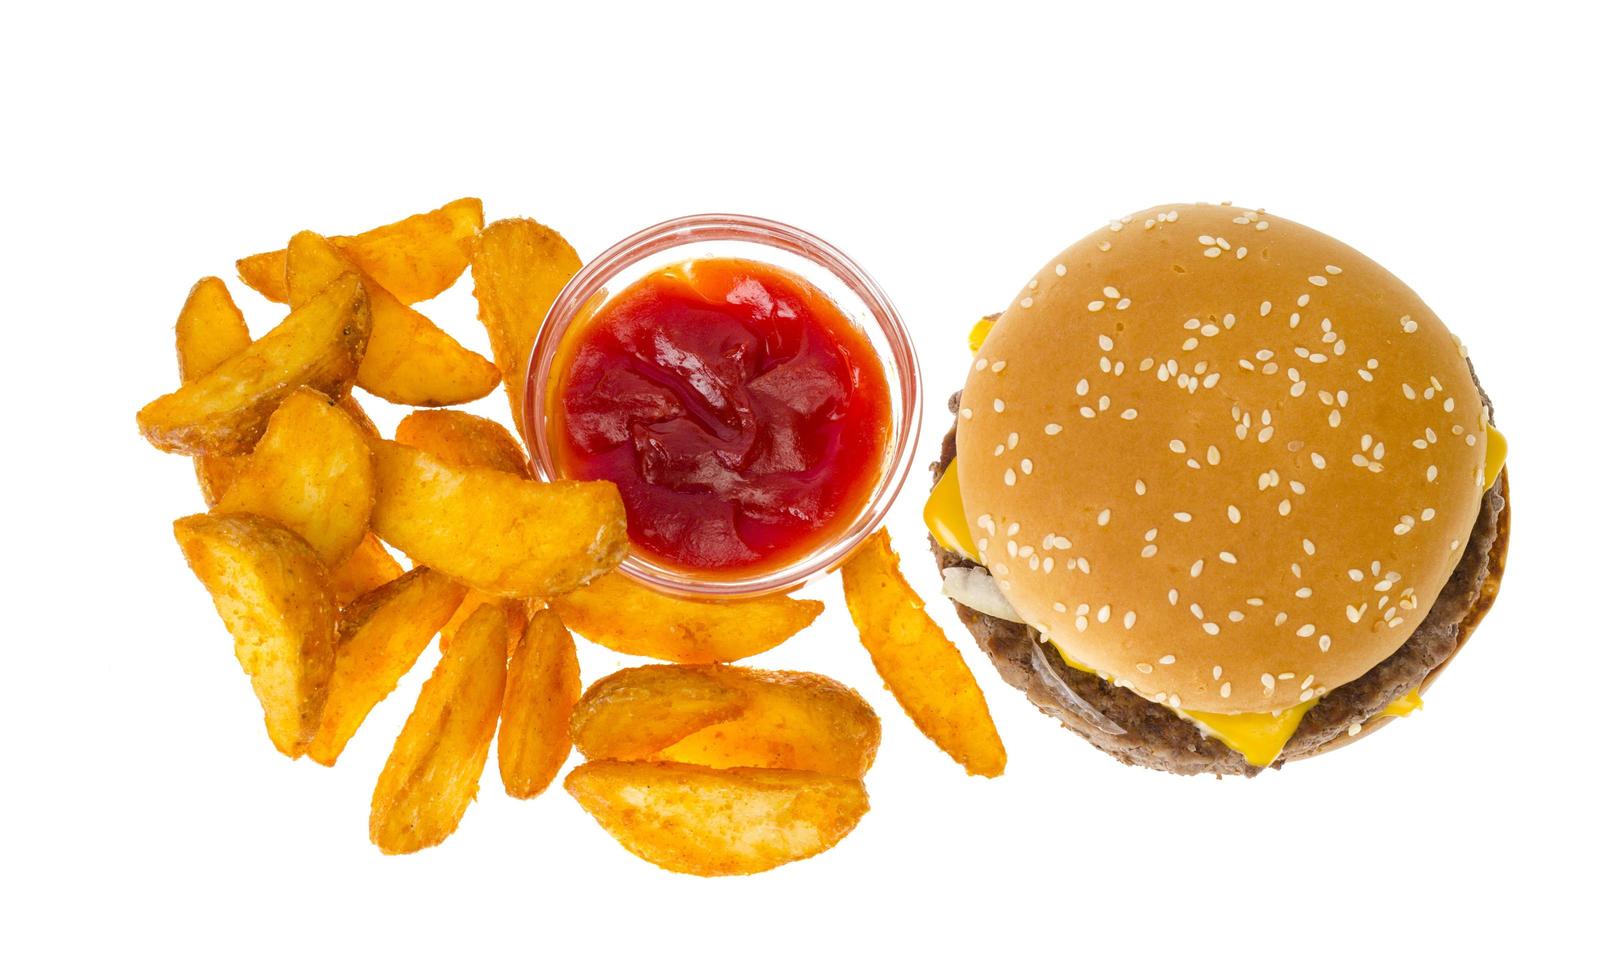 Rustic potato, hamburger, ketchup, fast food. Photo